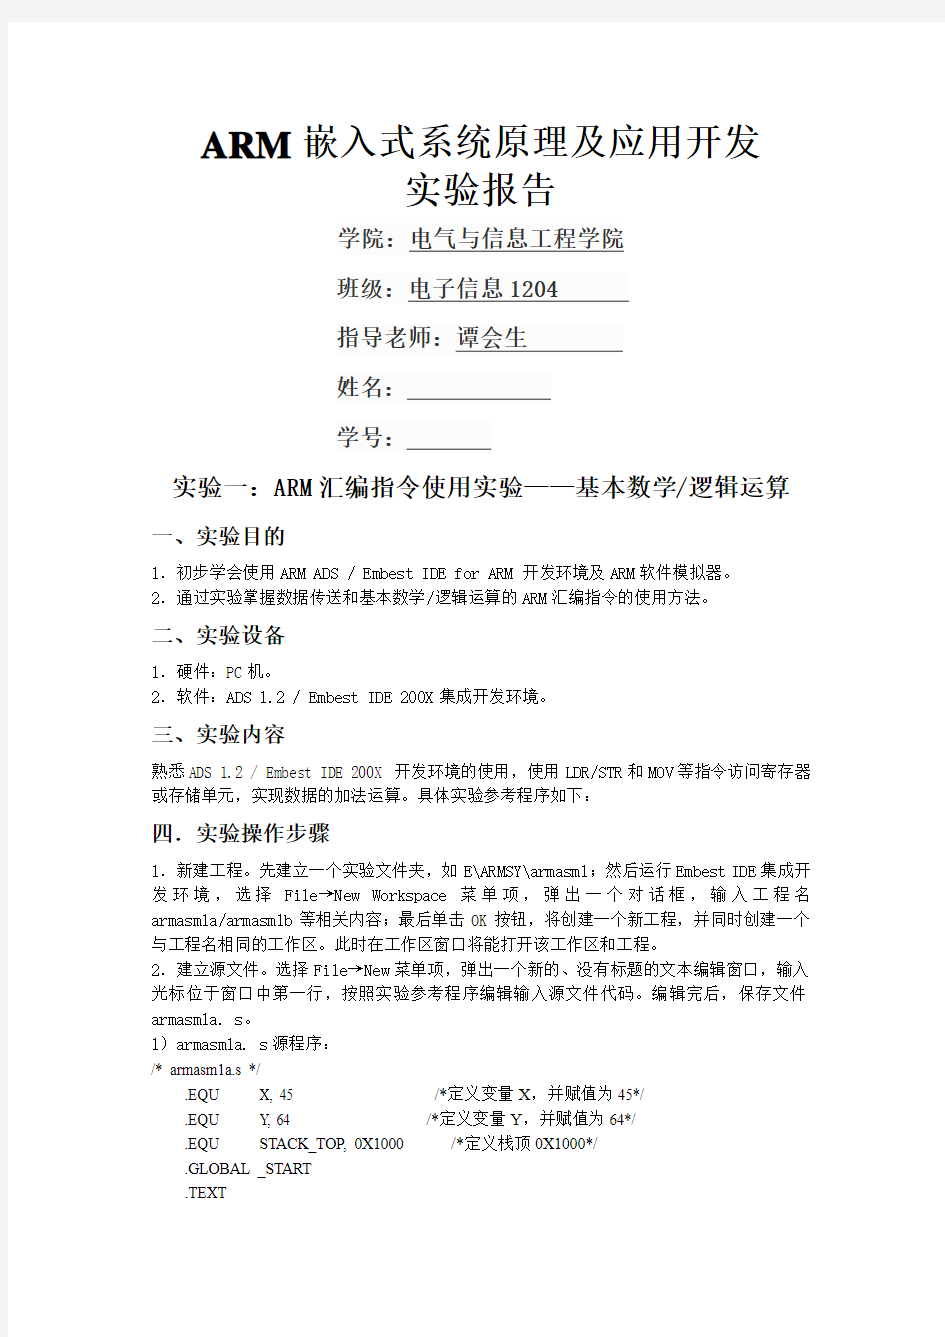 湖南工业大学ARM实验报告